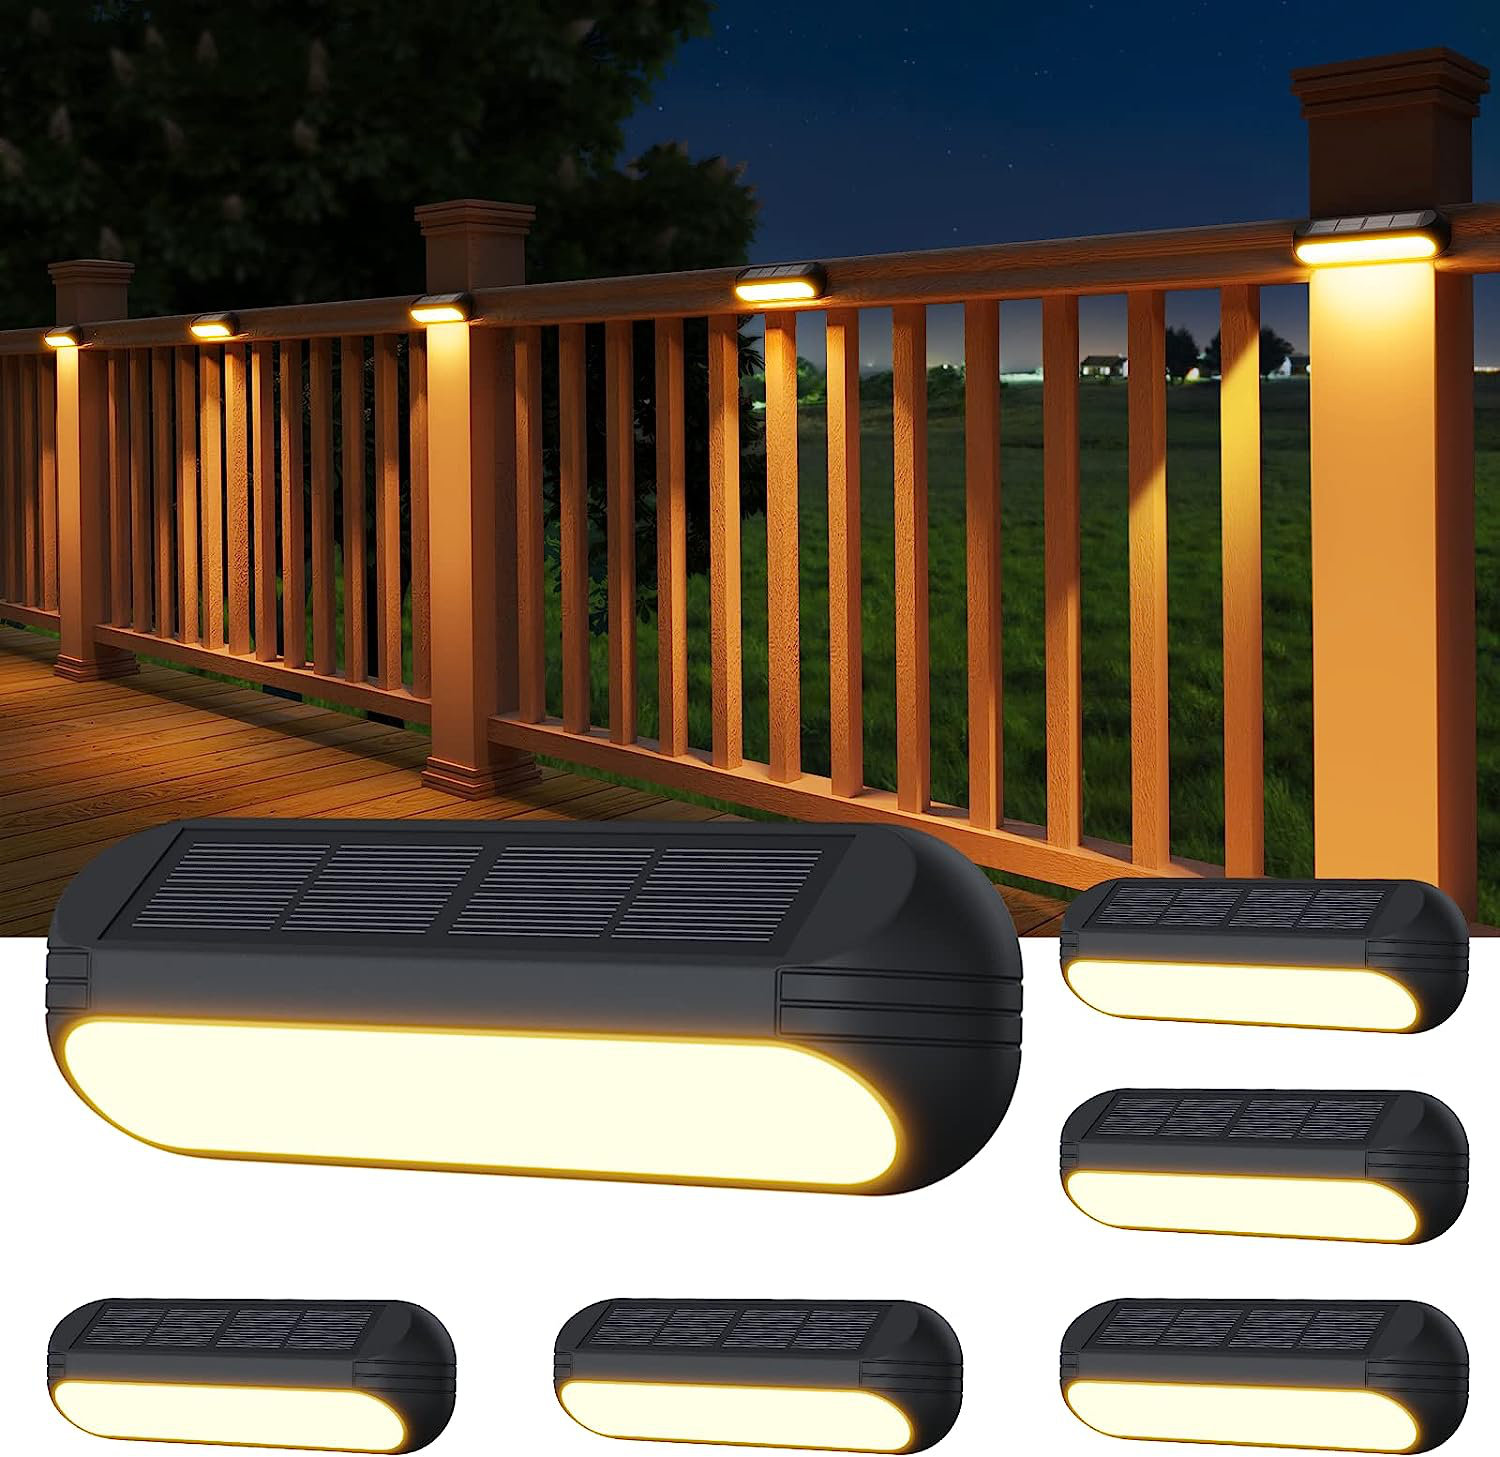 TFTEK Solar Fence Lights Outdoor, Waterproof Deck Pathway Yard Lamp, Stainless Steel,6 Pack,Black Metal case - 1